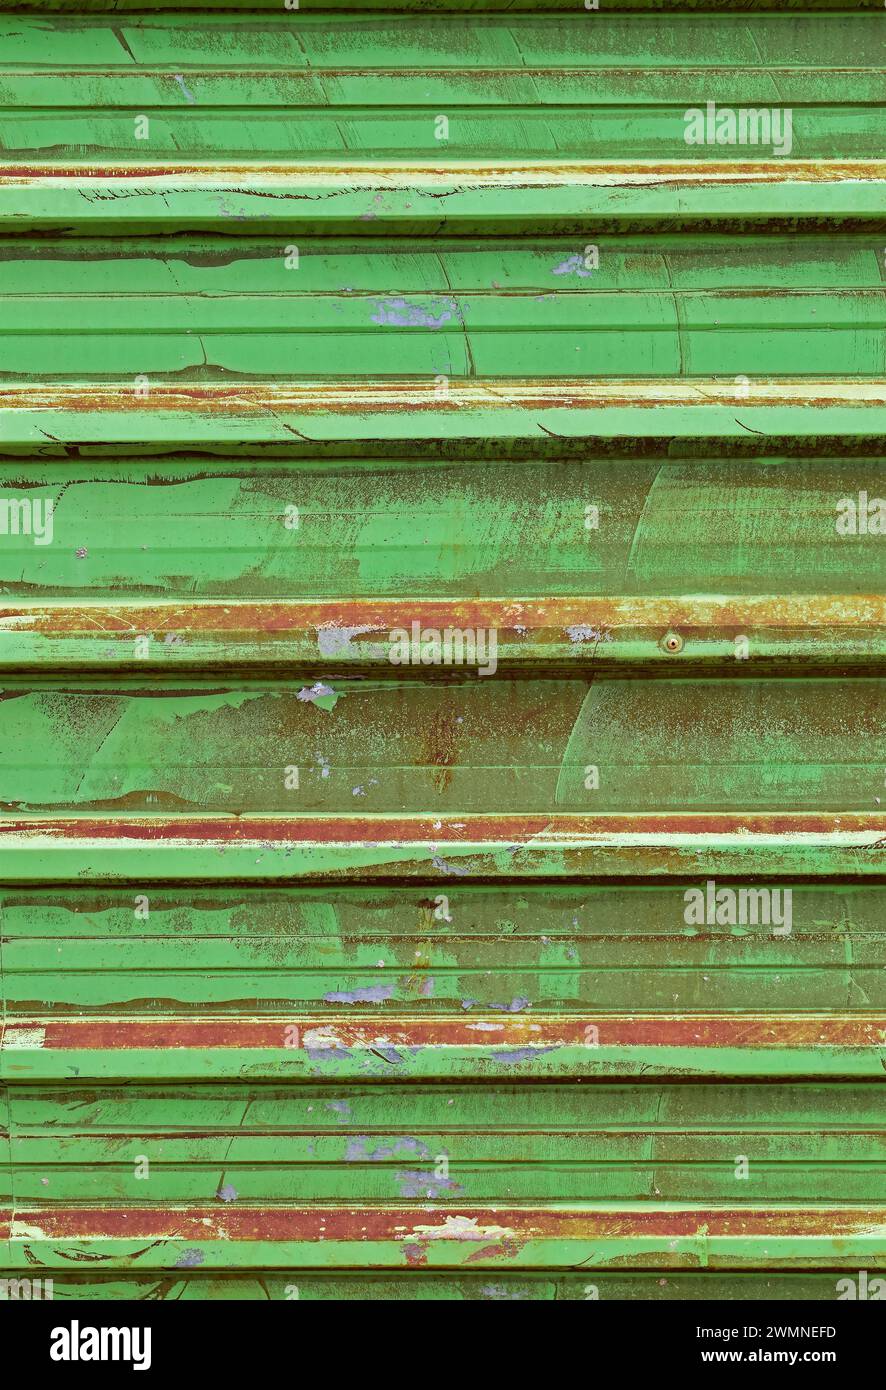 Placa de metal corrugado verde que rodea el yermo Foto de stock